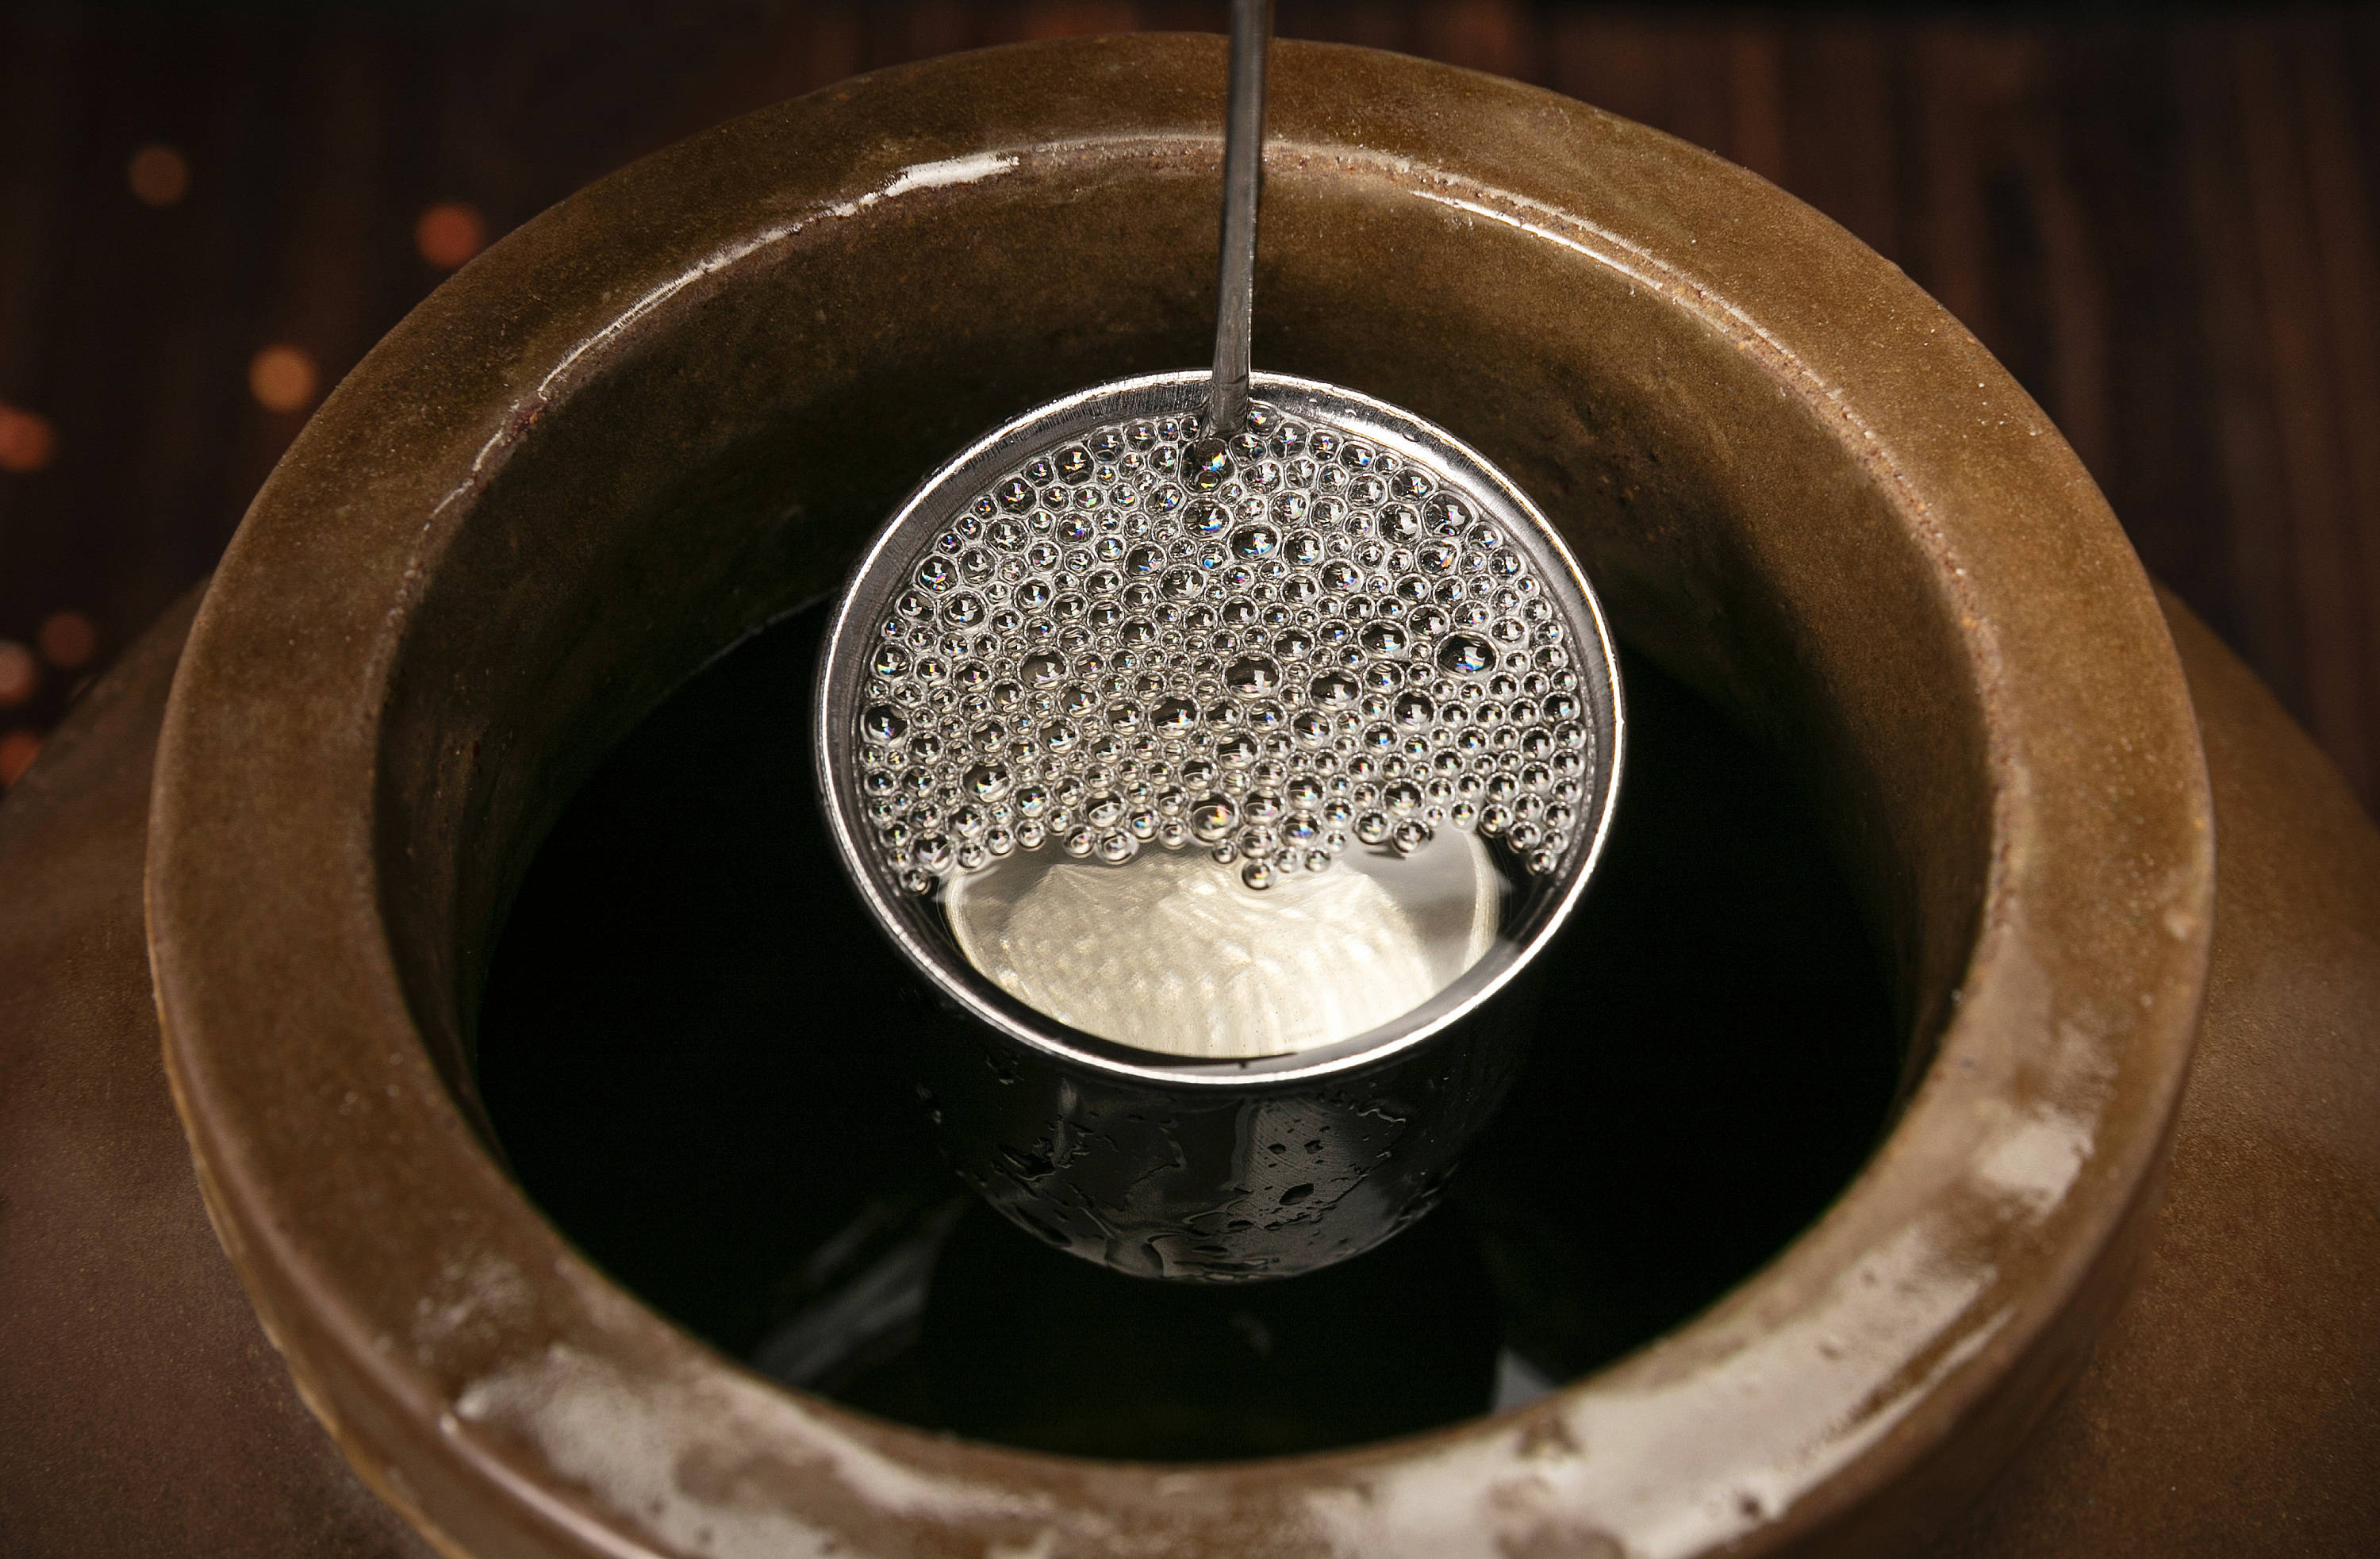 固液法白酒是以大米为原料,小曲为糖化发酵剂,先在固态条件下糖化,再